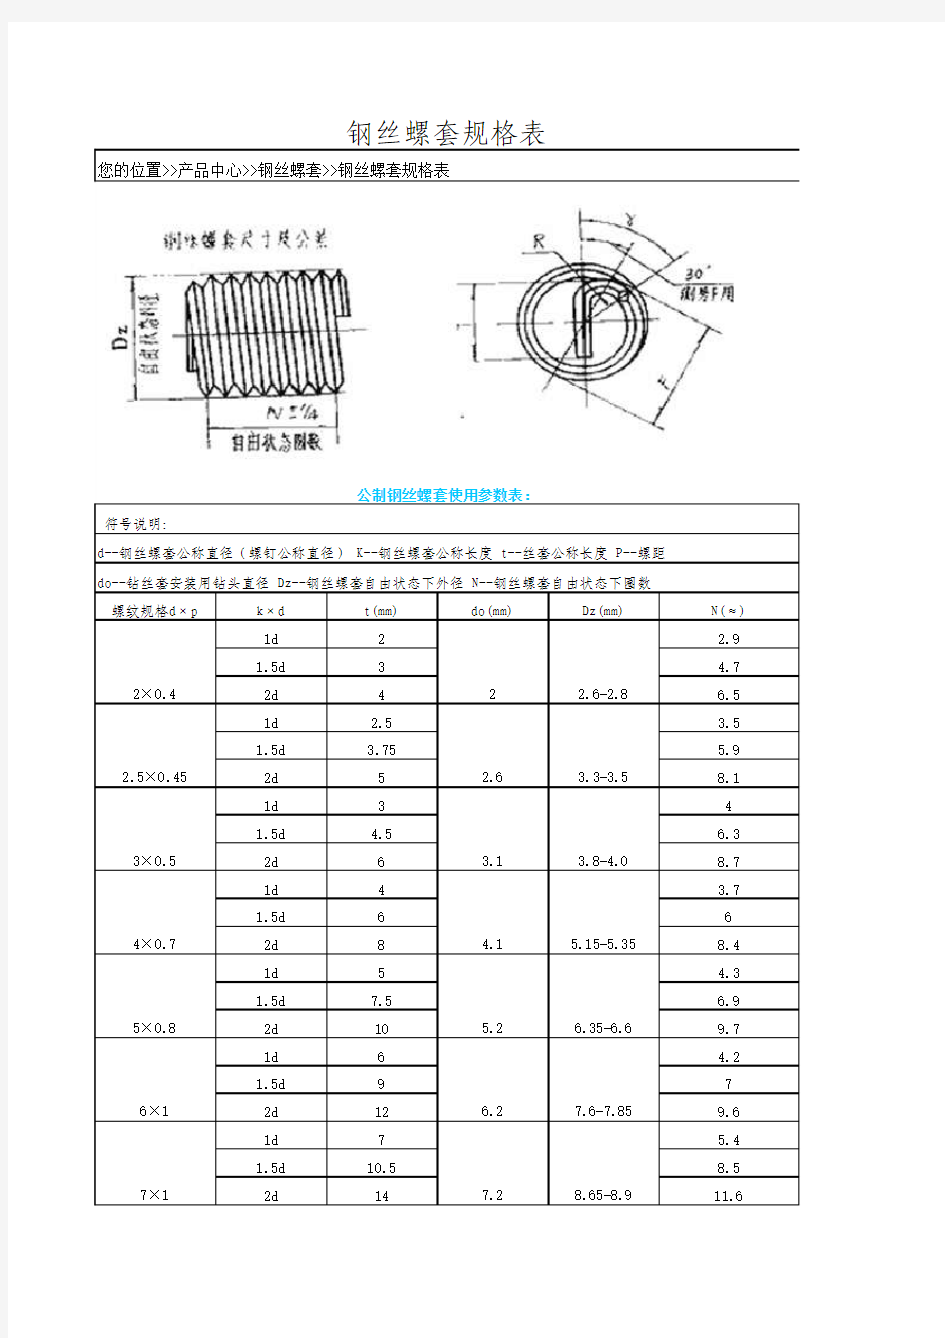 公制和英制钢丝螺套规格对照表